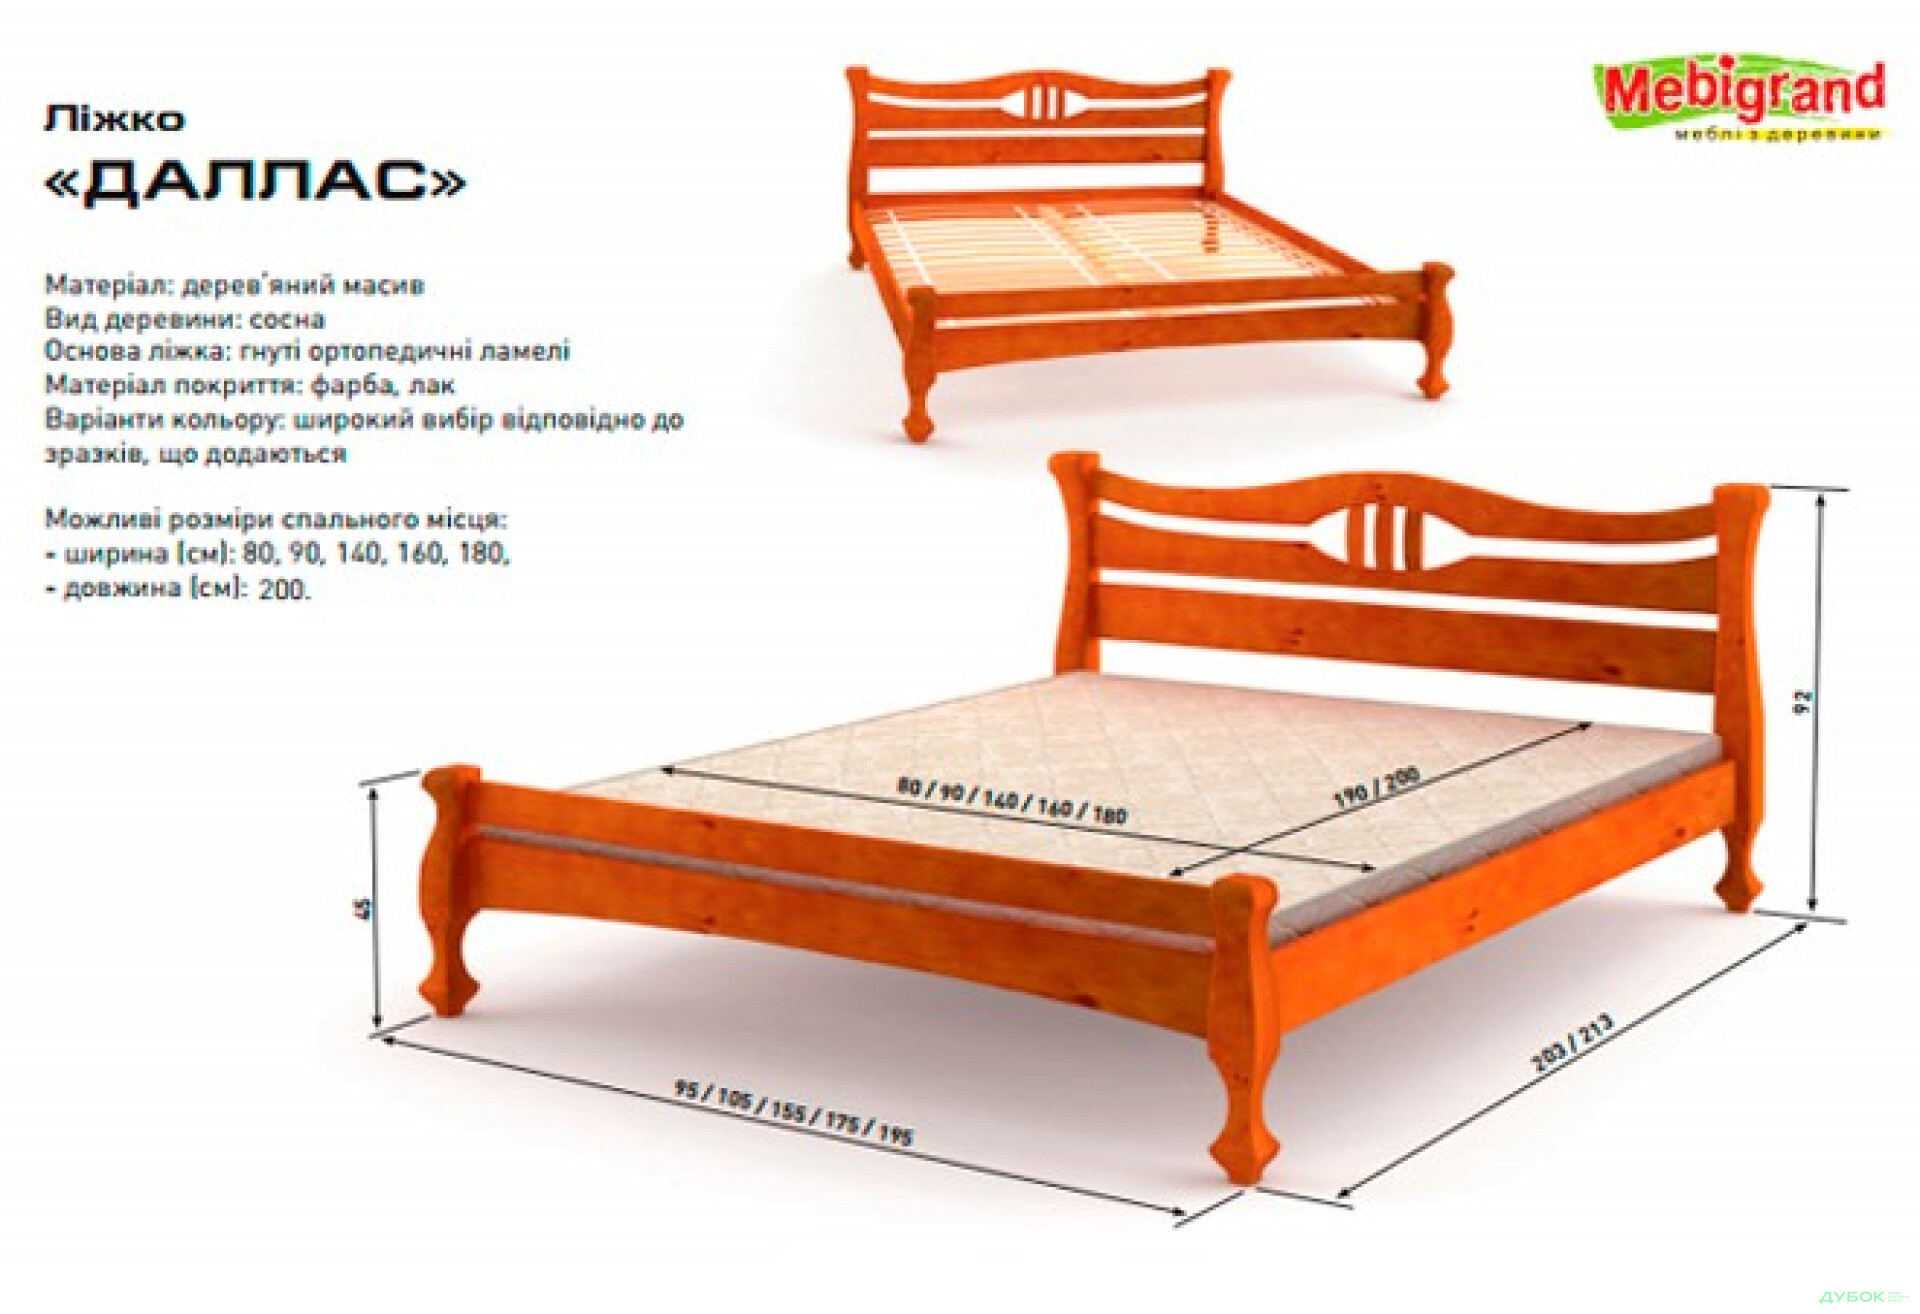 Фото 2 - Кровать двуспальная деревяная Даллас 140 Mebigrand